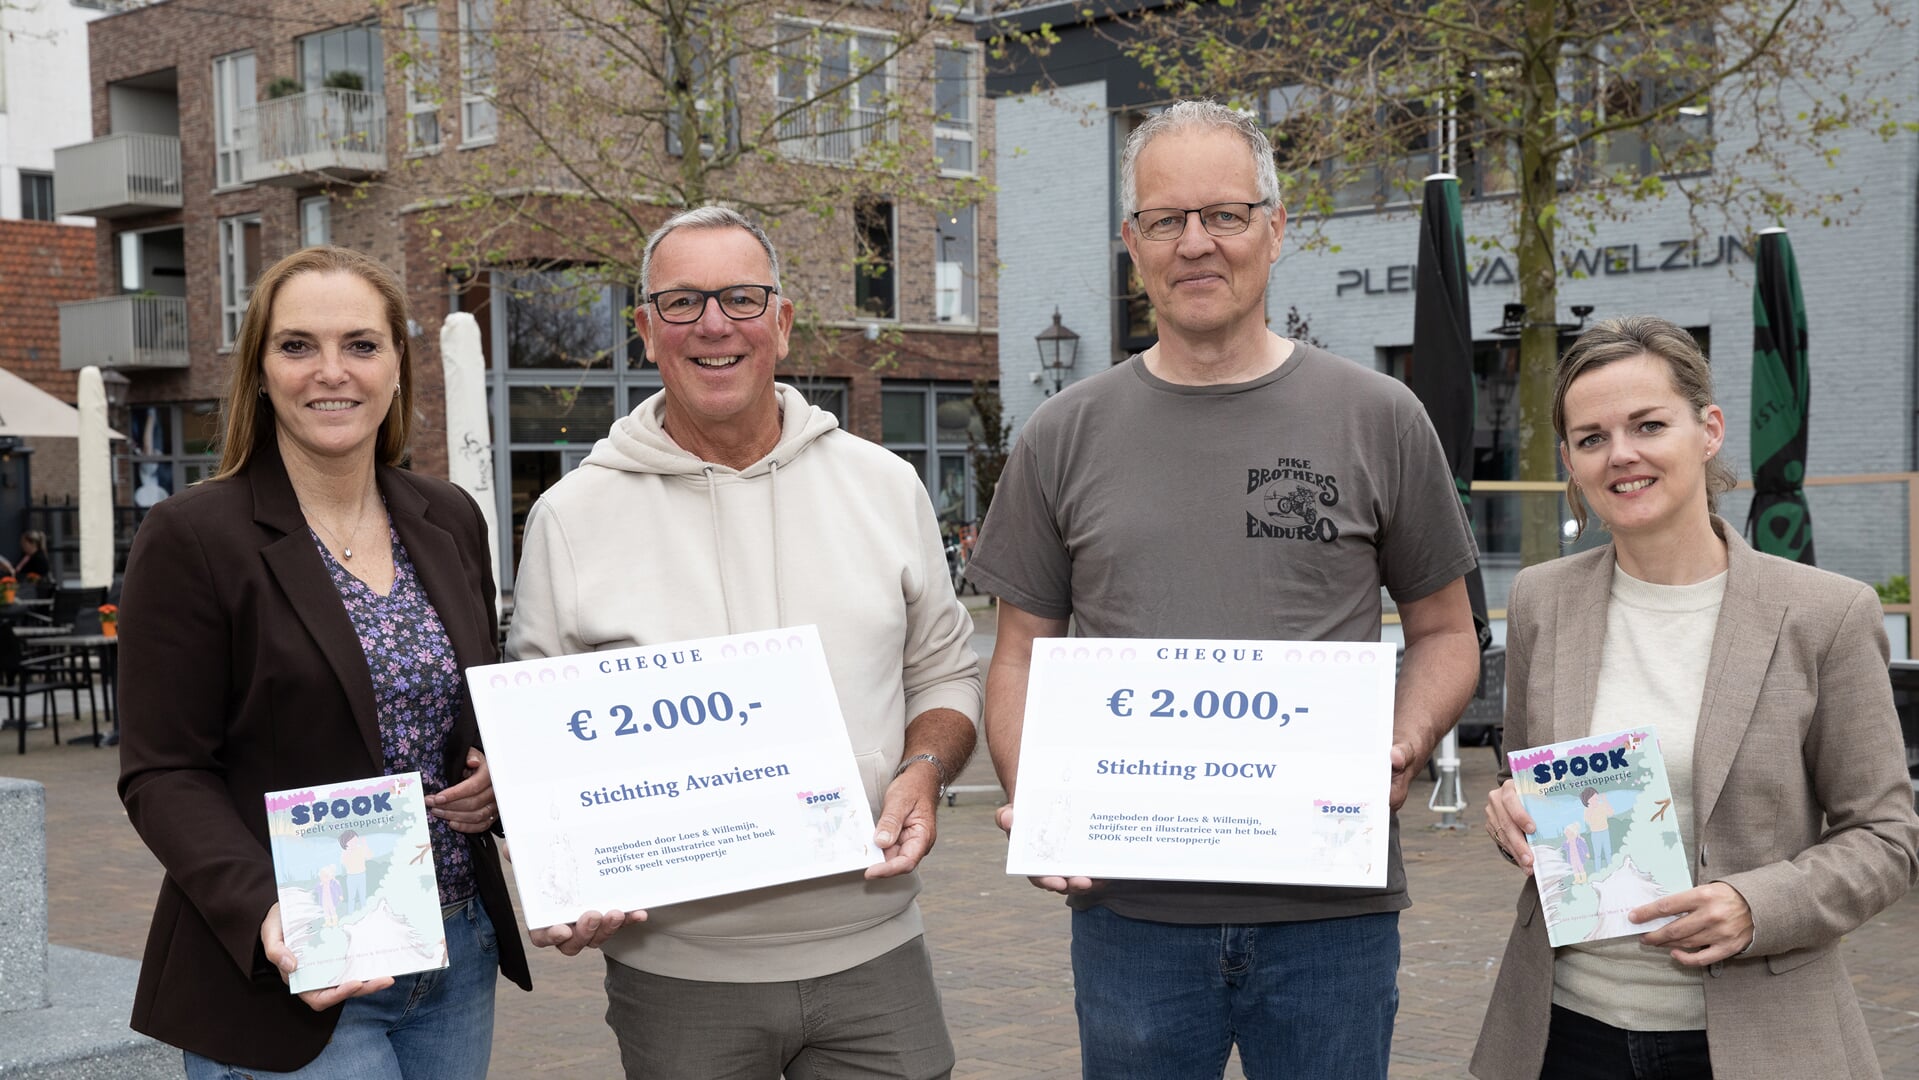 Hans Prins van Stichting Avavieren en € 2.000,- en Arie Camfferman van Stichting Dieren Opvang Centrum Westland namen de cheques in ontvangst. 